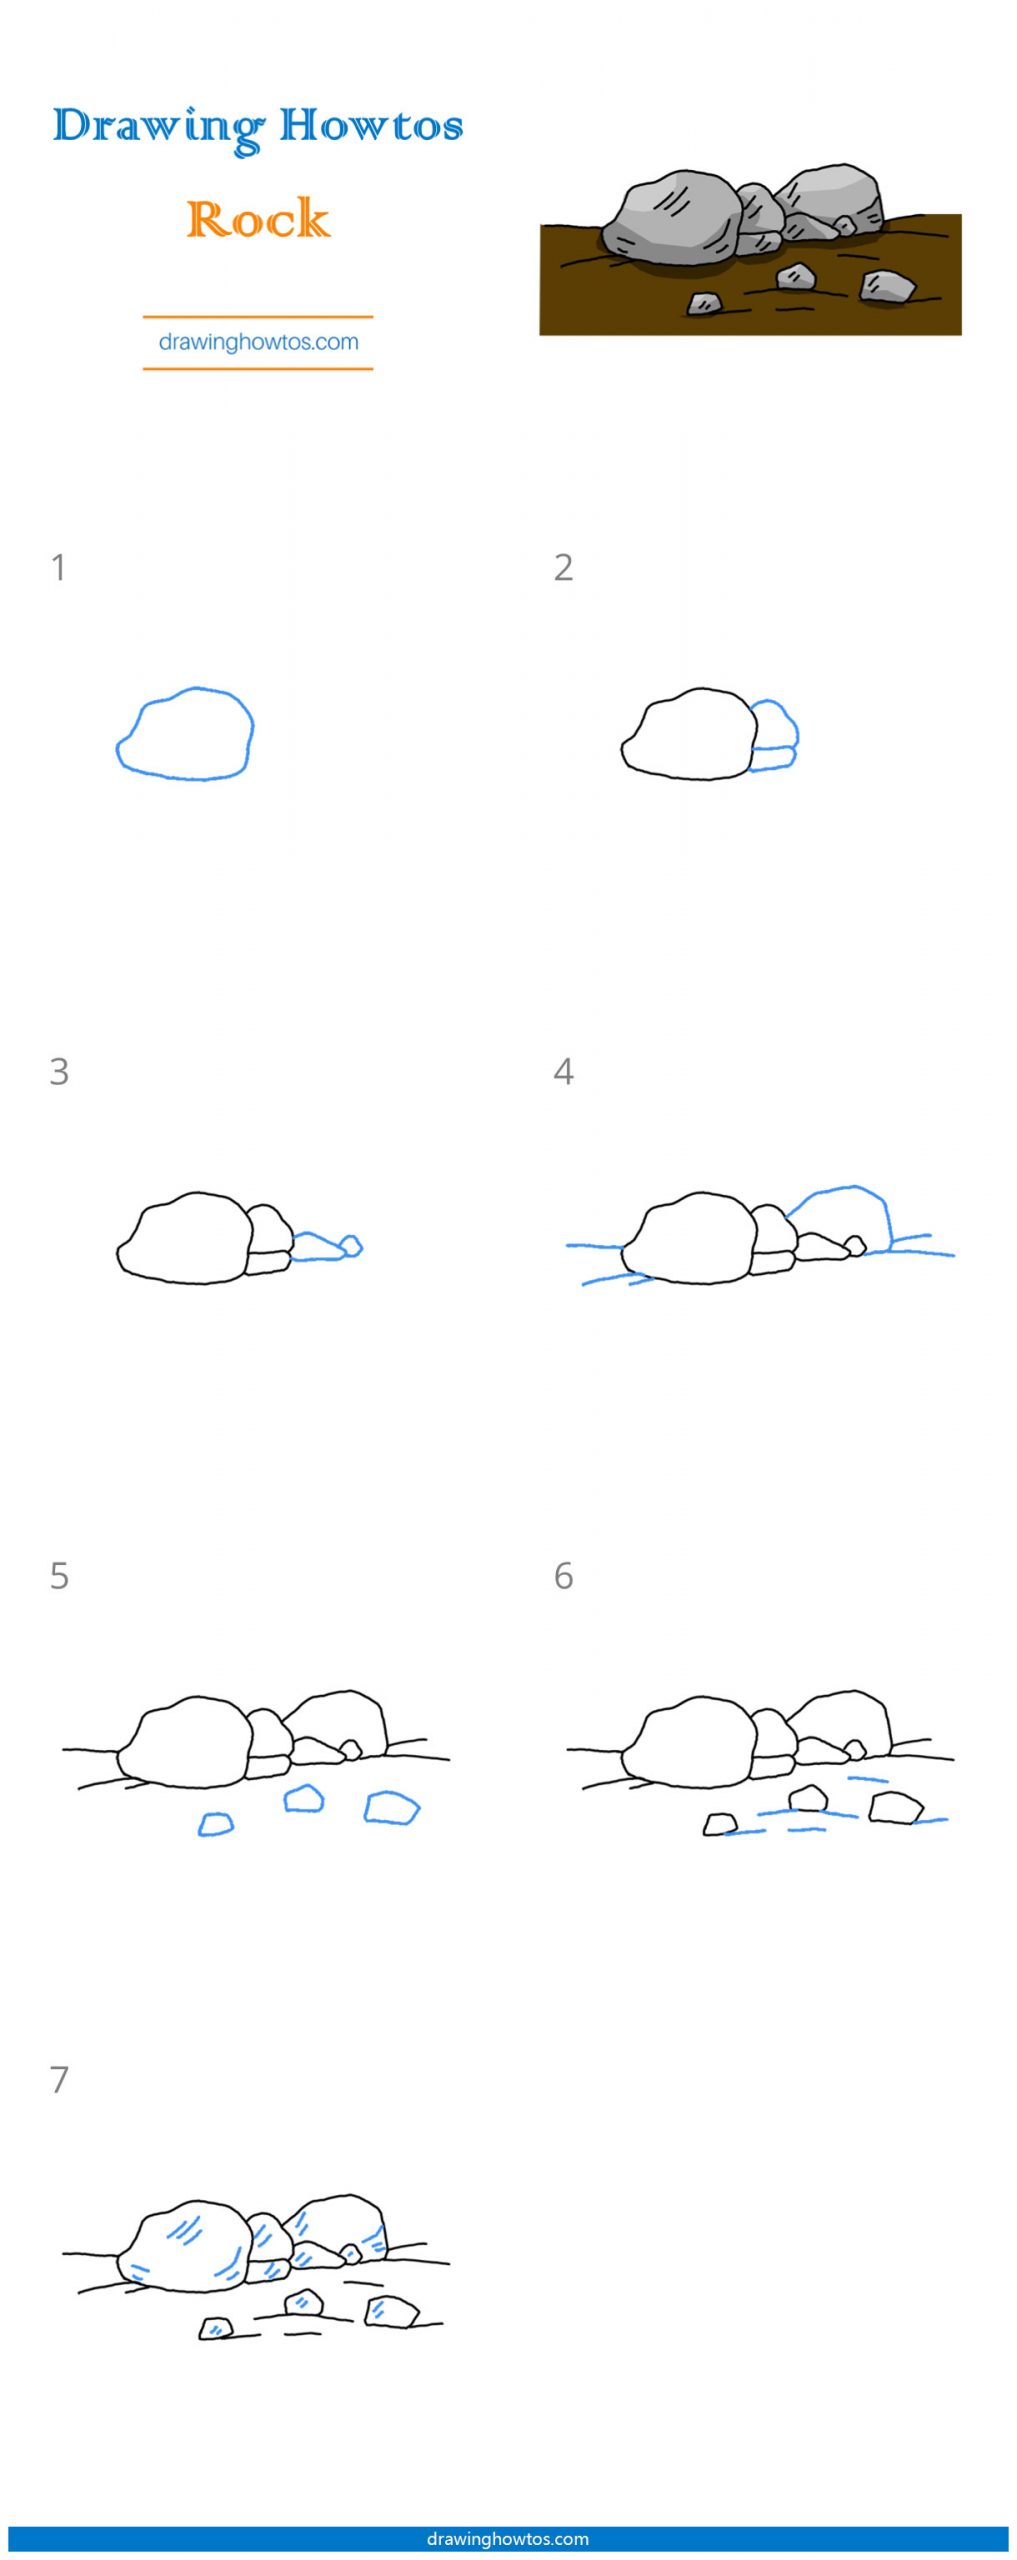 How to Draw Rocks Step by Step